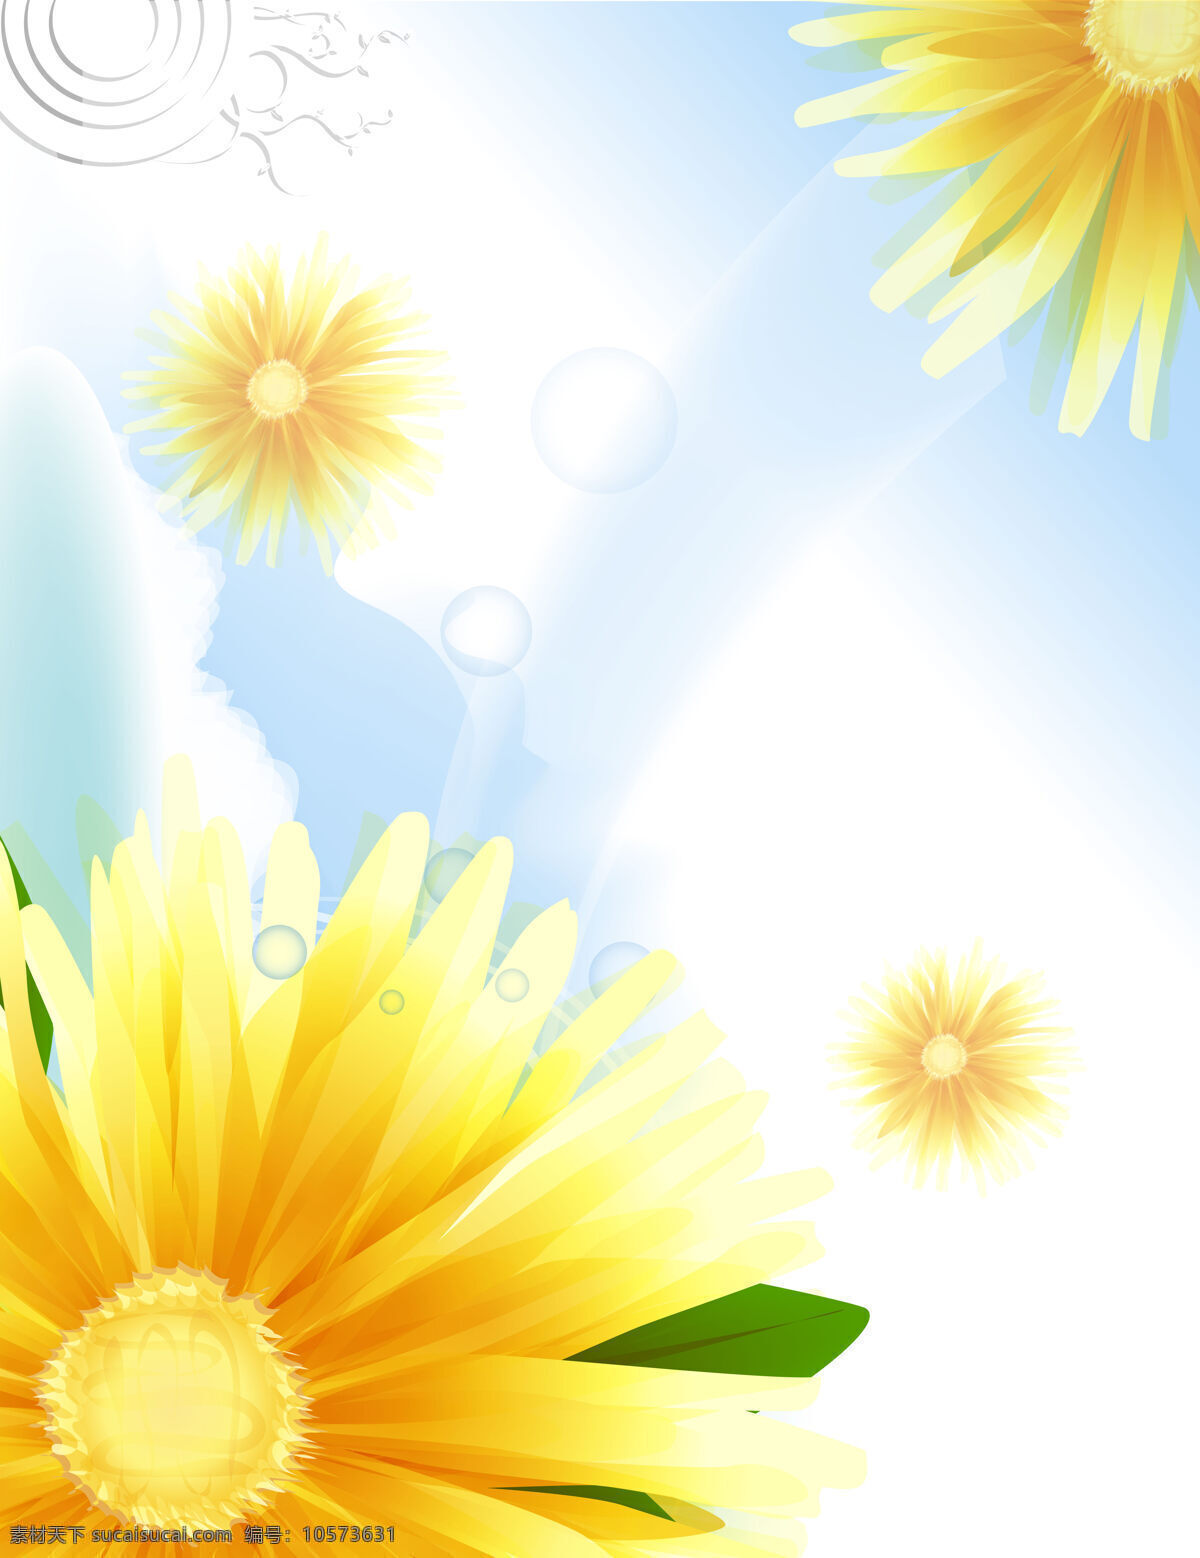 玻璃 移门 装饰 花朵 向日葵 背景 玻璃移门 玻璃移门图片 花草移门图 黄色花朵 衣柜门 衣柜移门 装饰图片 家居装饰素材